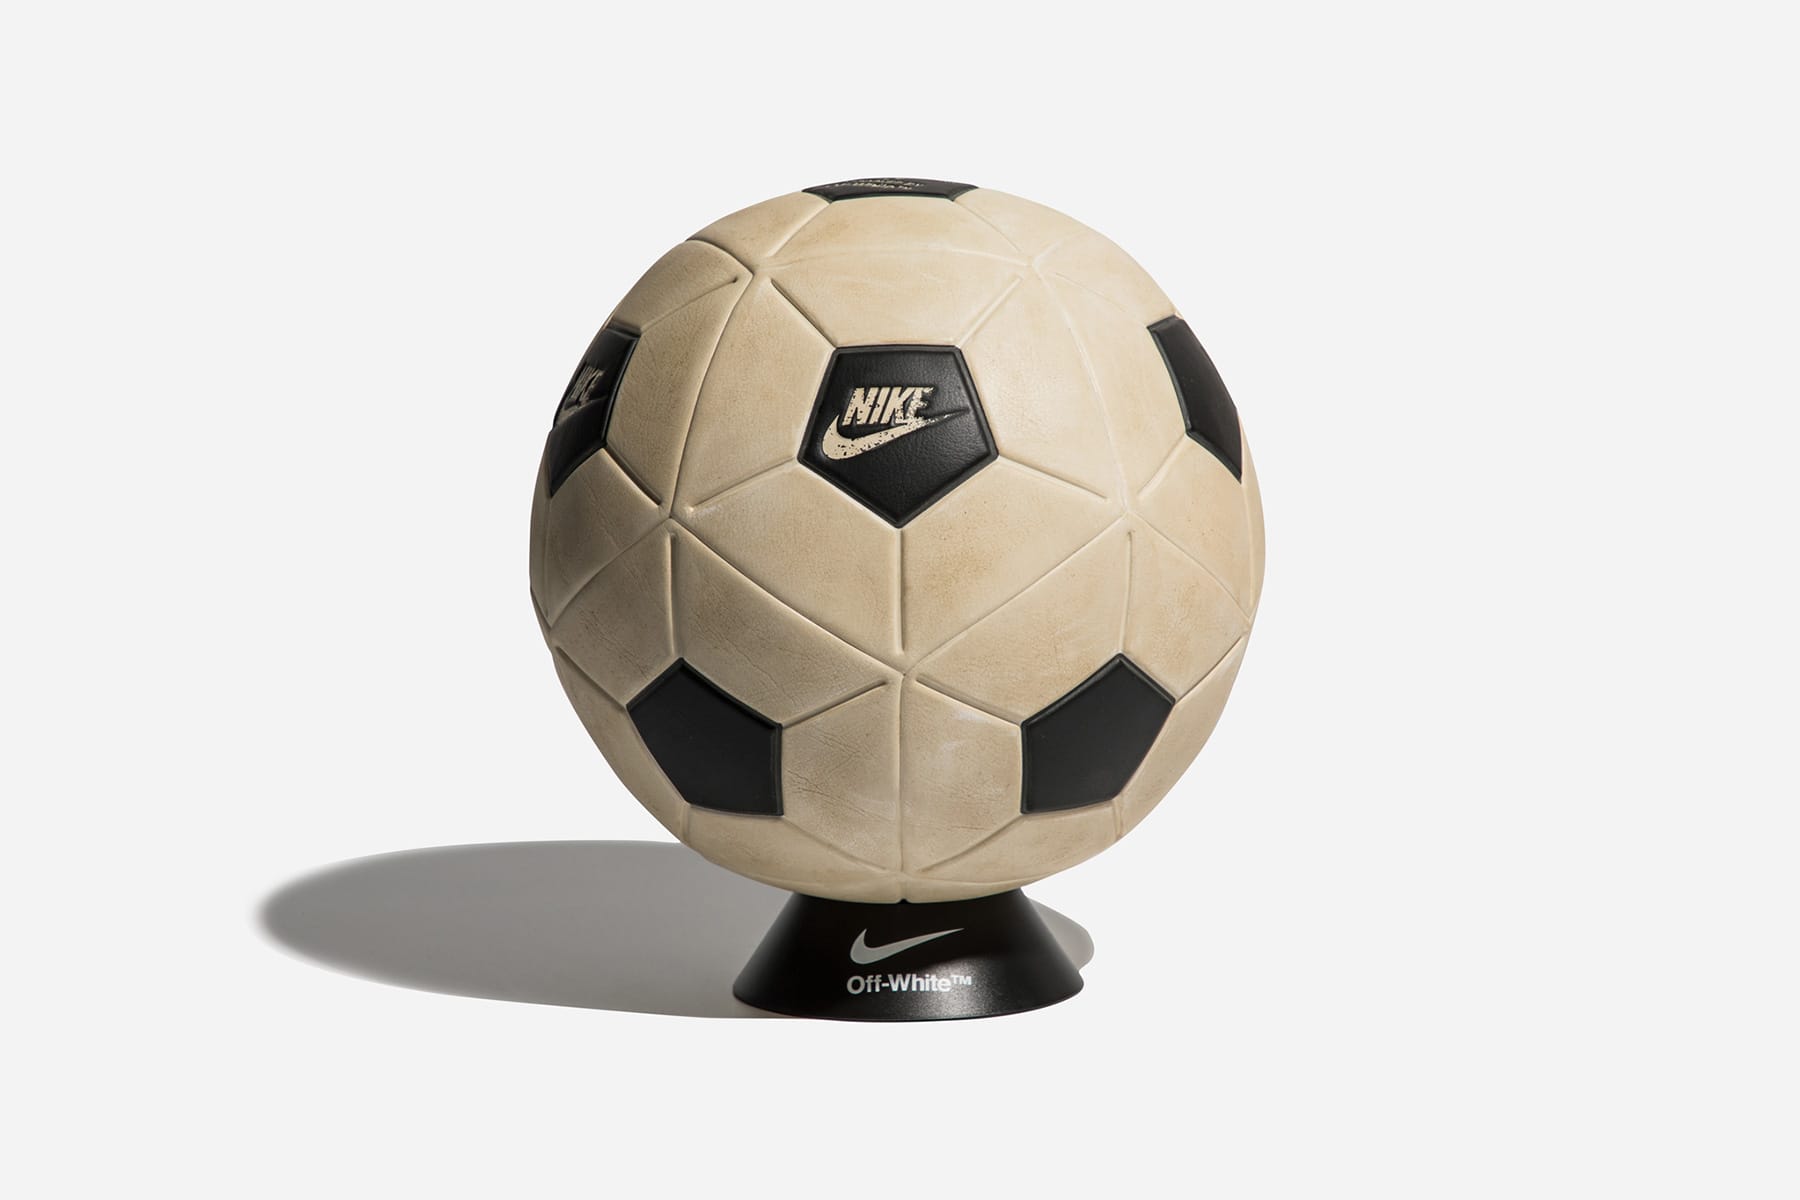 オフホワイトxナイキによるコラボサッカーボール 